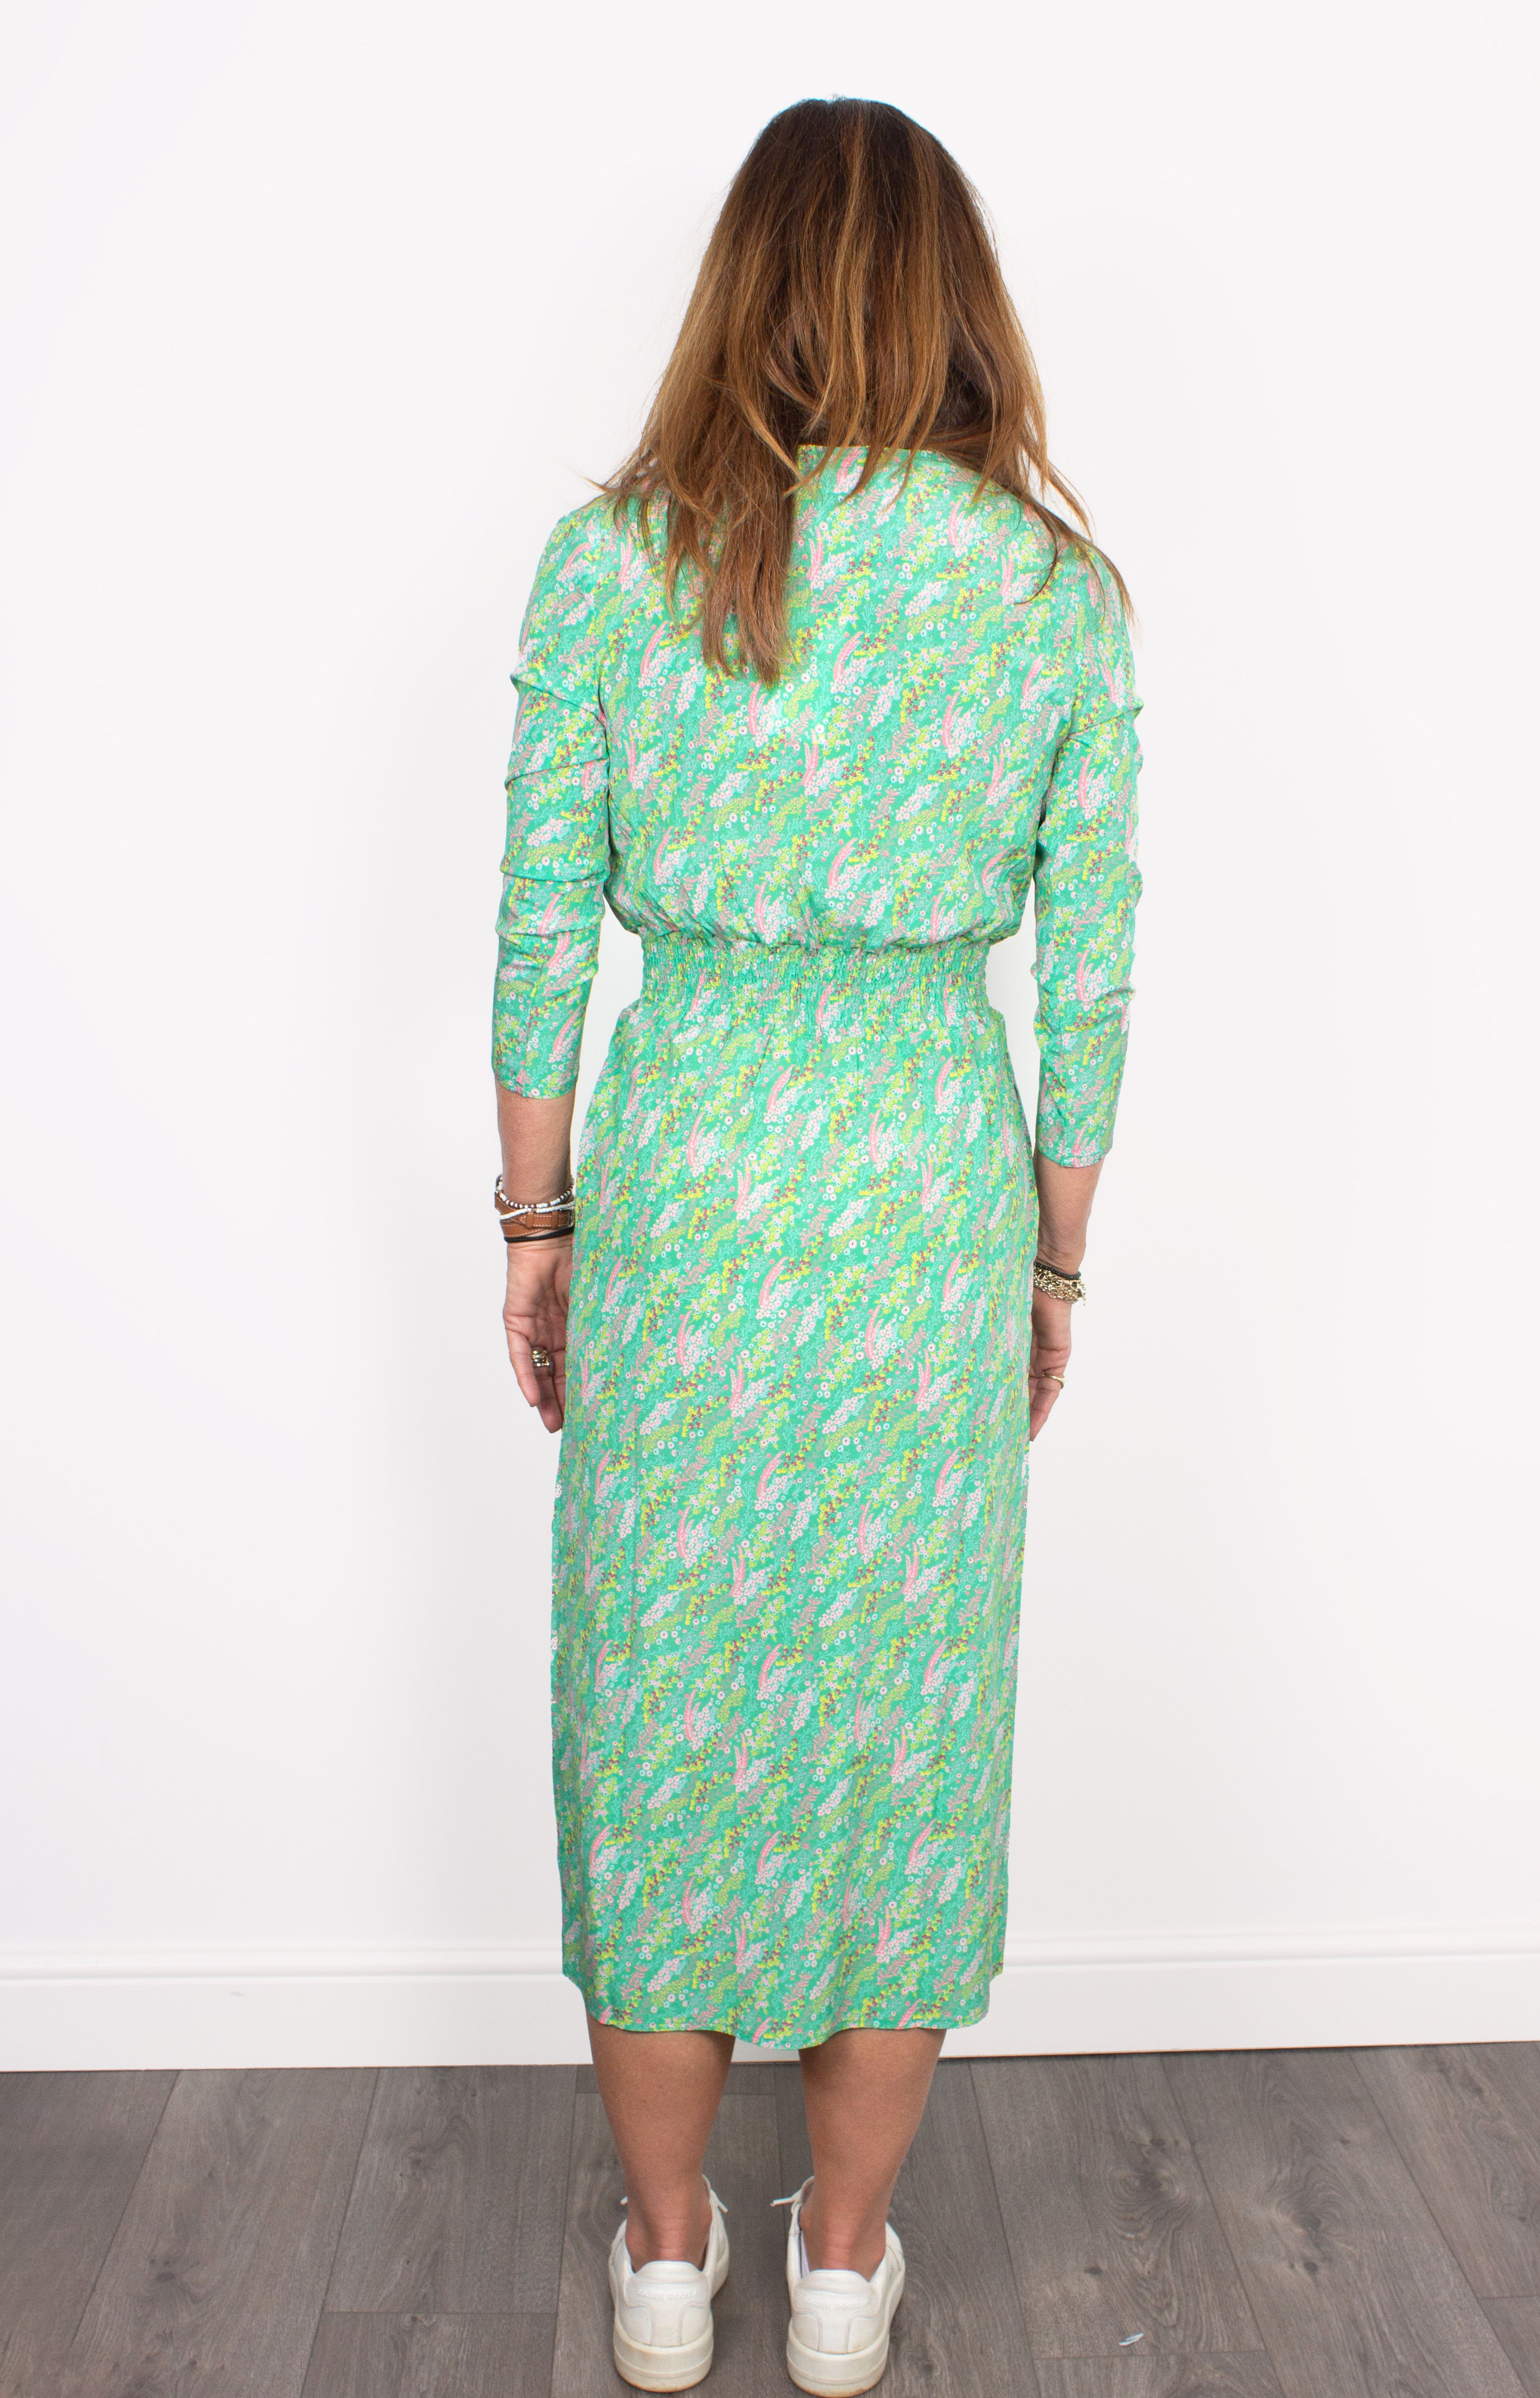 PPL Tiffany Dress in Wild Flowers 03 in Multi on Green